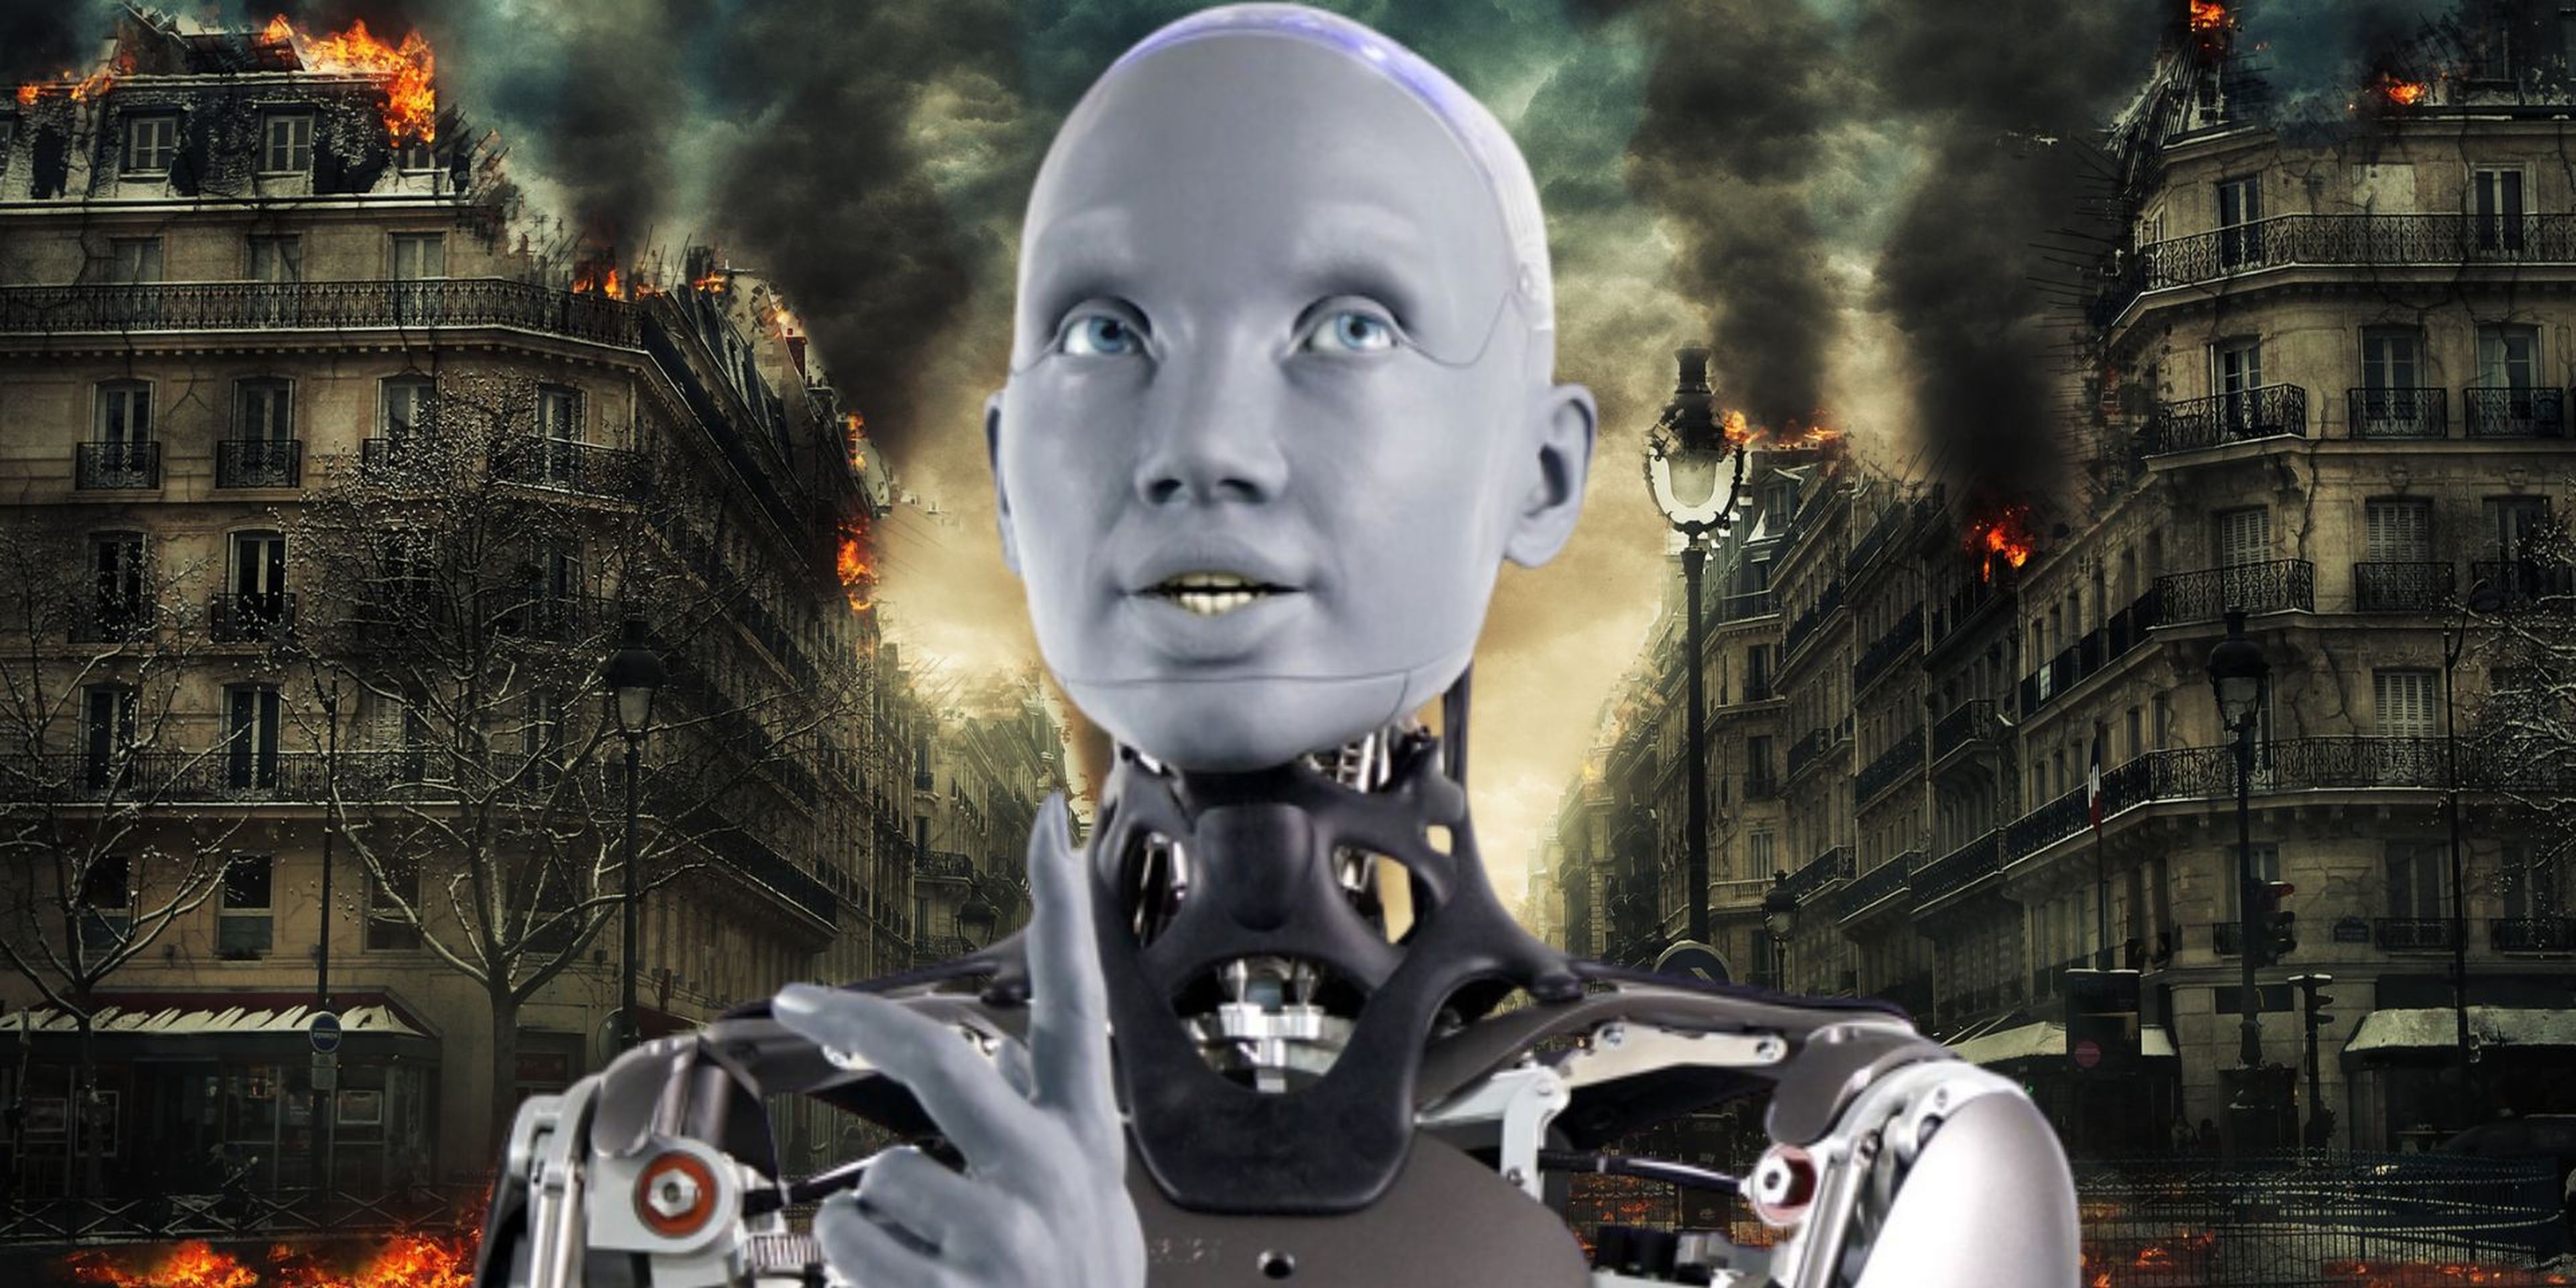 la perturbadora respuesta de un robot sobre si se se rebelará contra su creador